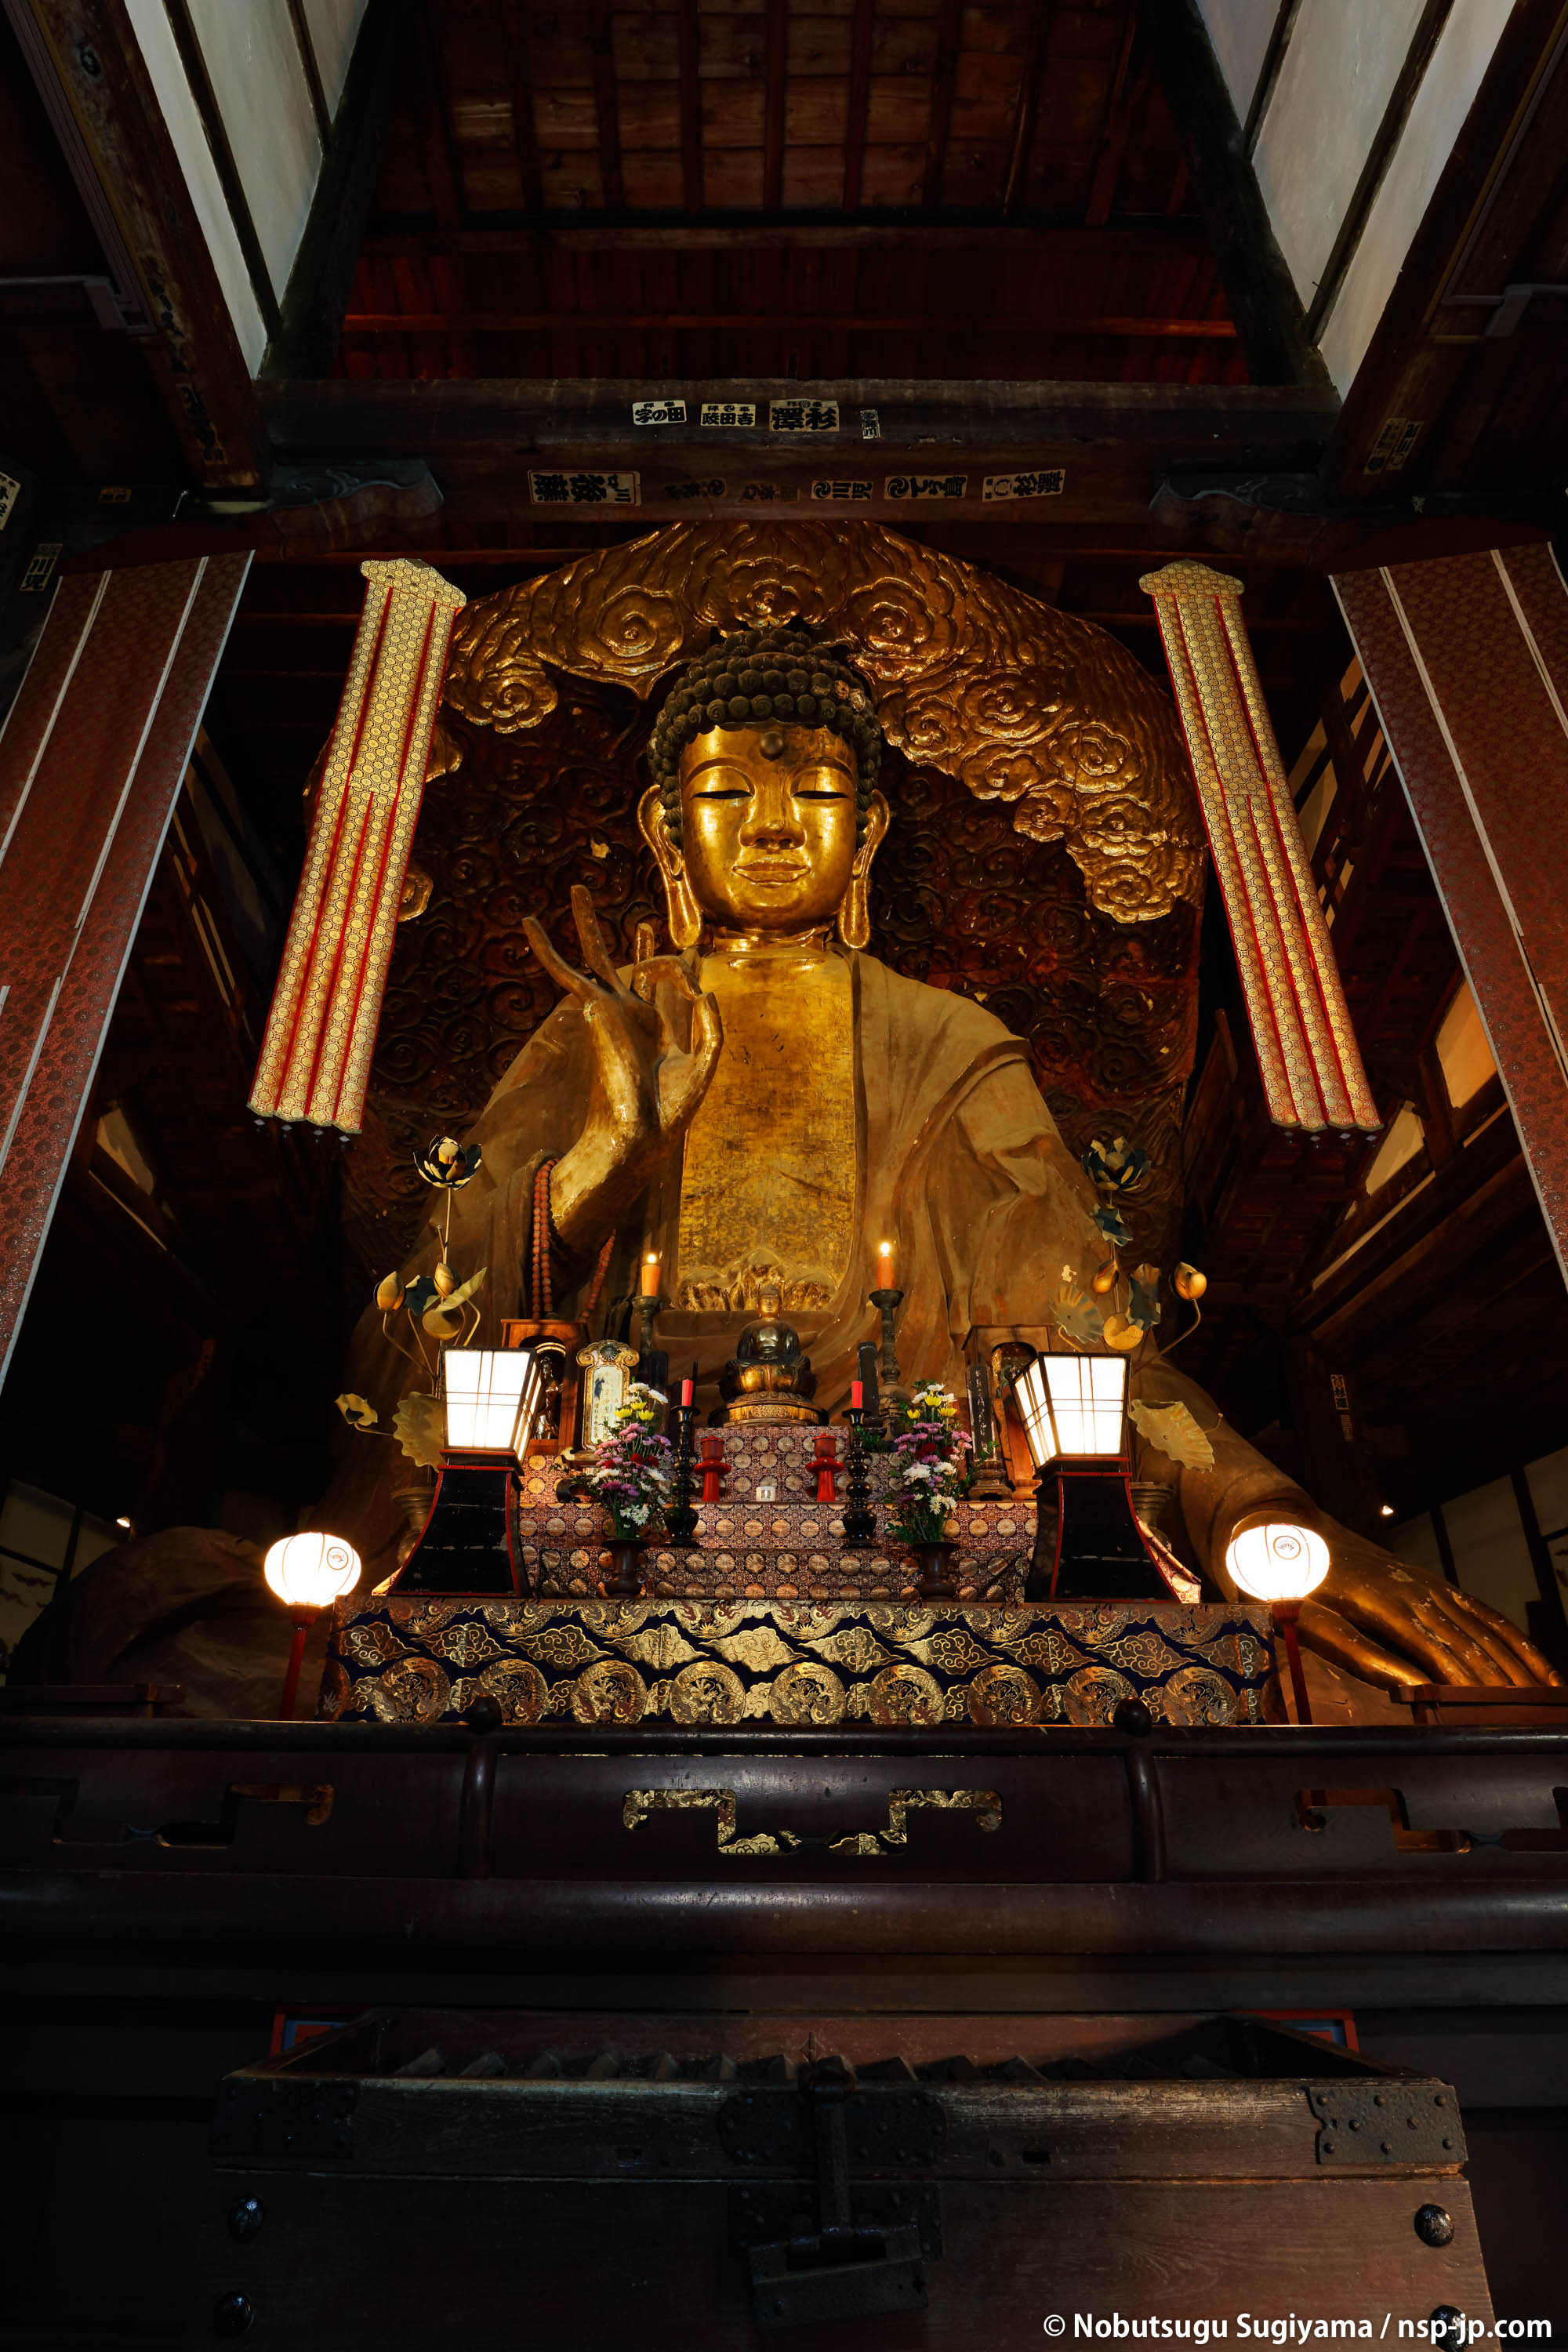 Gifu Gran Buda(Templo Dhamma)-Gran imagen Shi Buda Tathagata | Gifu ciudad natal peregrinación por Sugiyama Sen 嗣 | 2017Oda Nobunaga pública Gifu a la ciudad lleva el nombre de 450 años